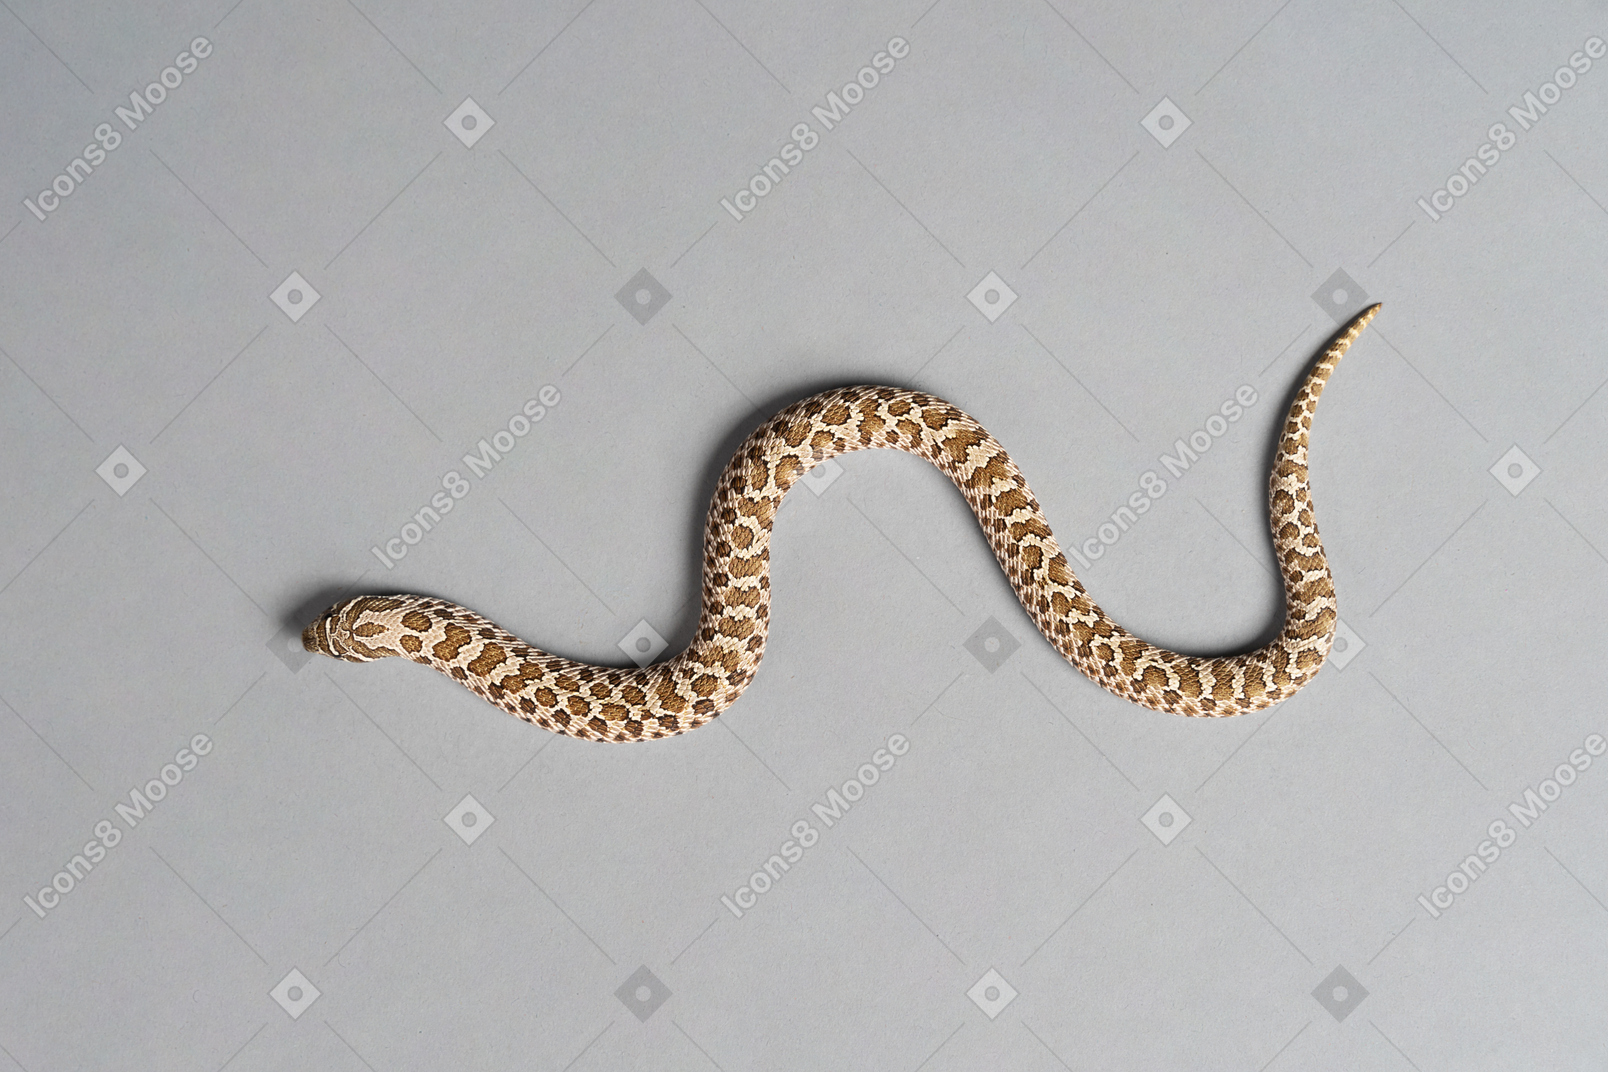 Un piccolo serpente di mais